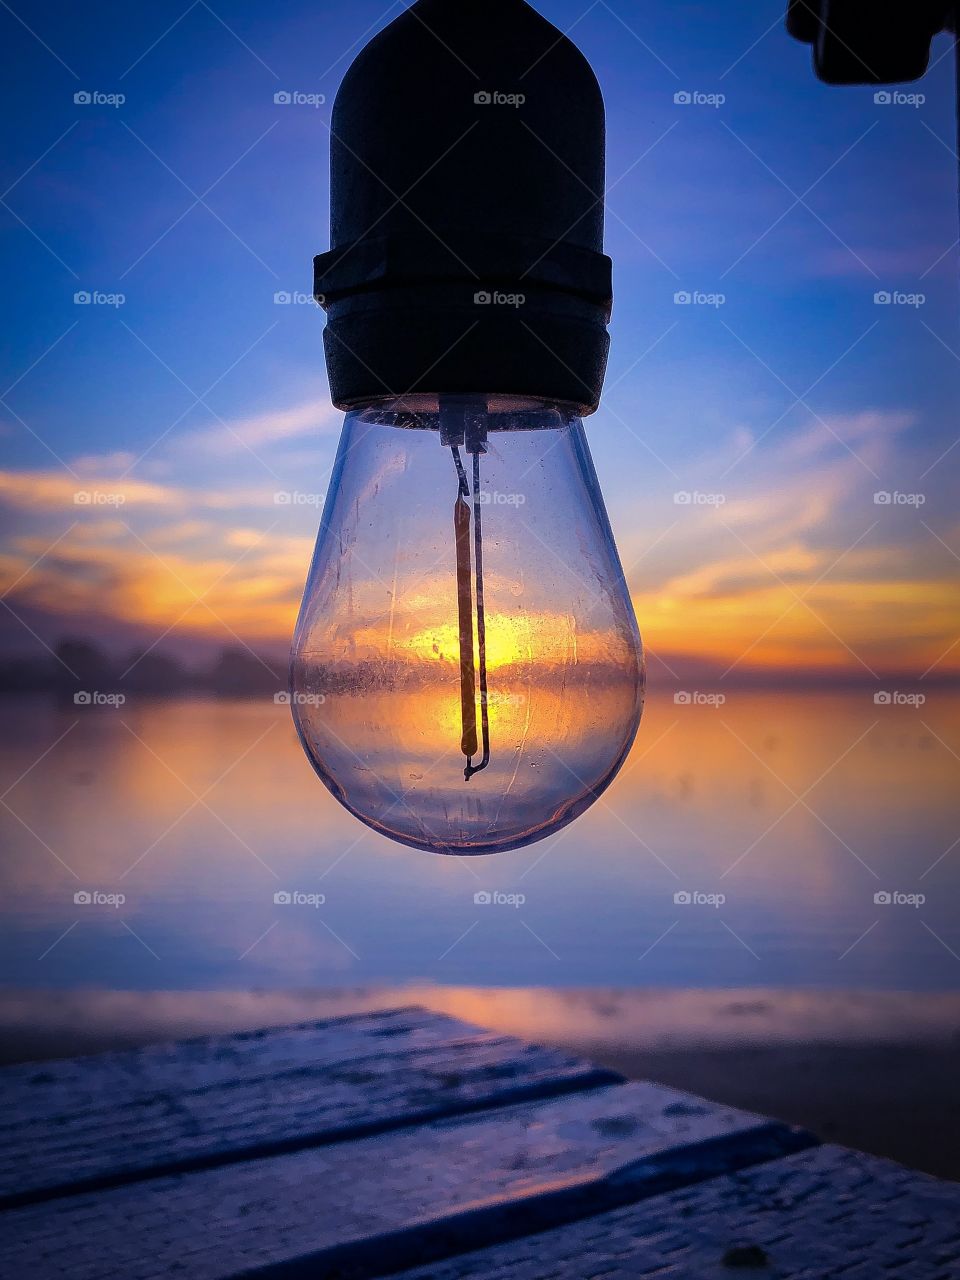 Lightbulb outdoors 